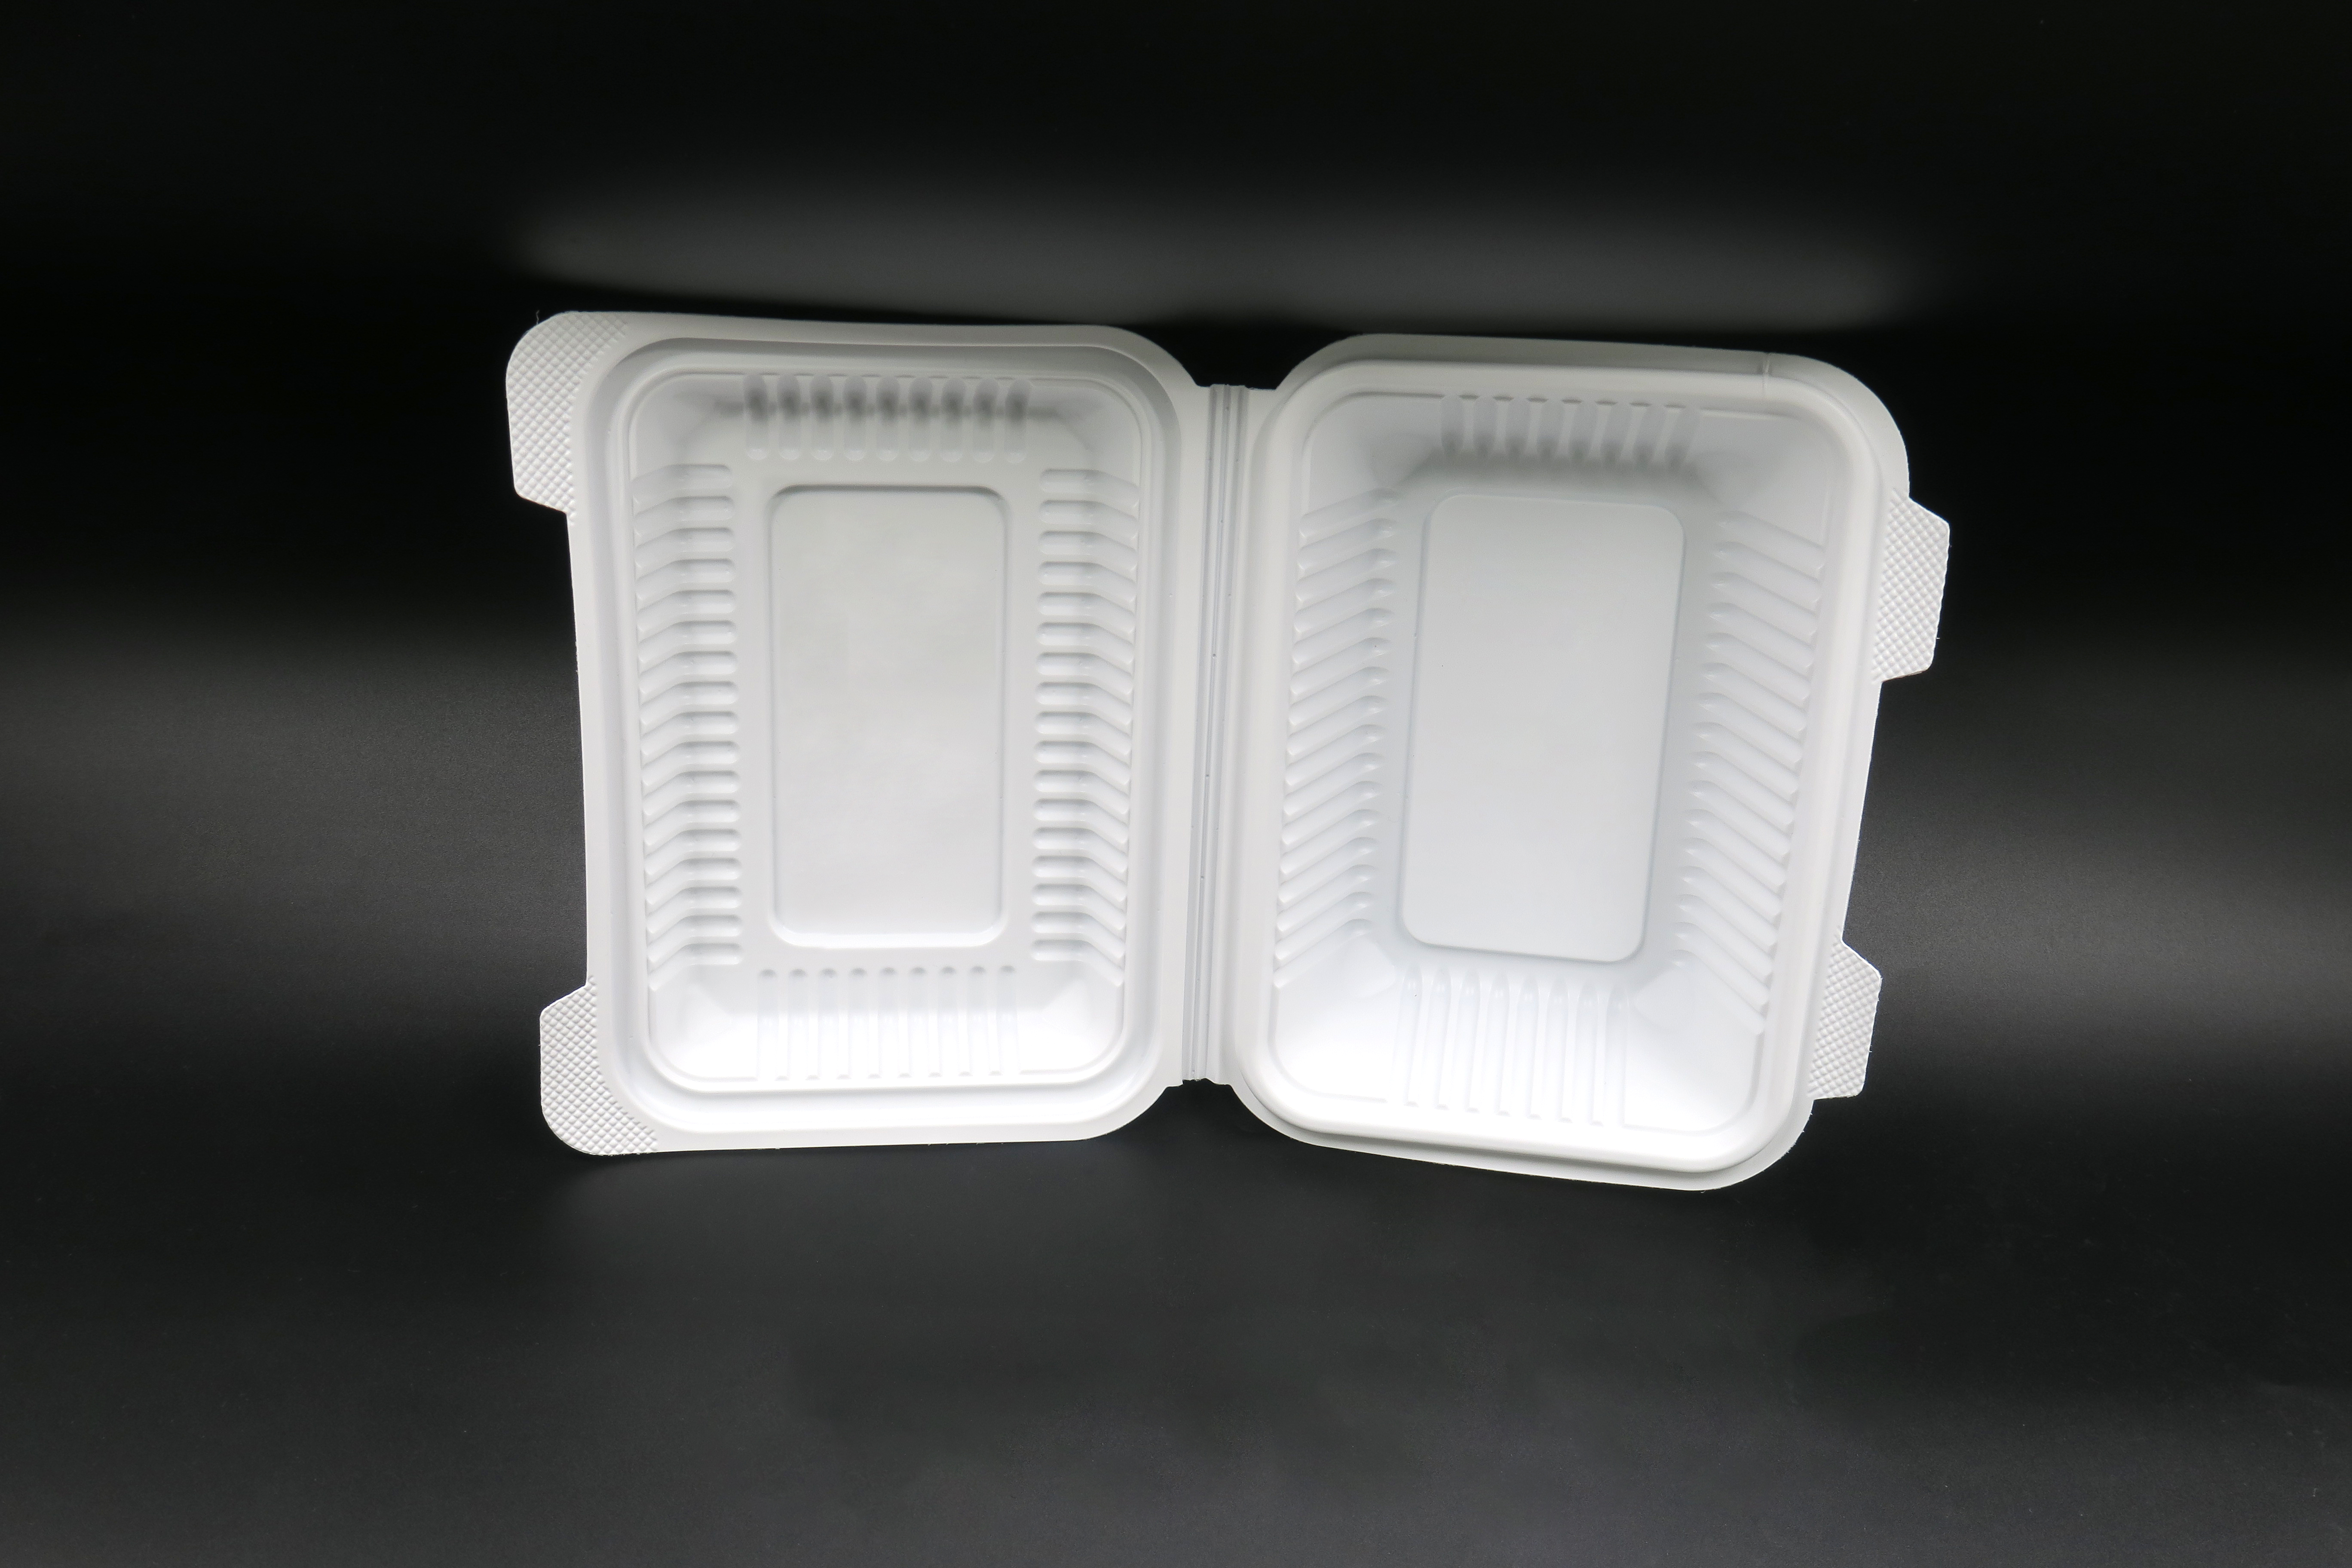 Lunchbox zum Mitnehmen aus Kunststoff zum Mitnehmen